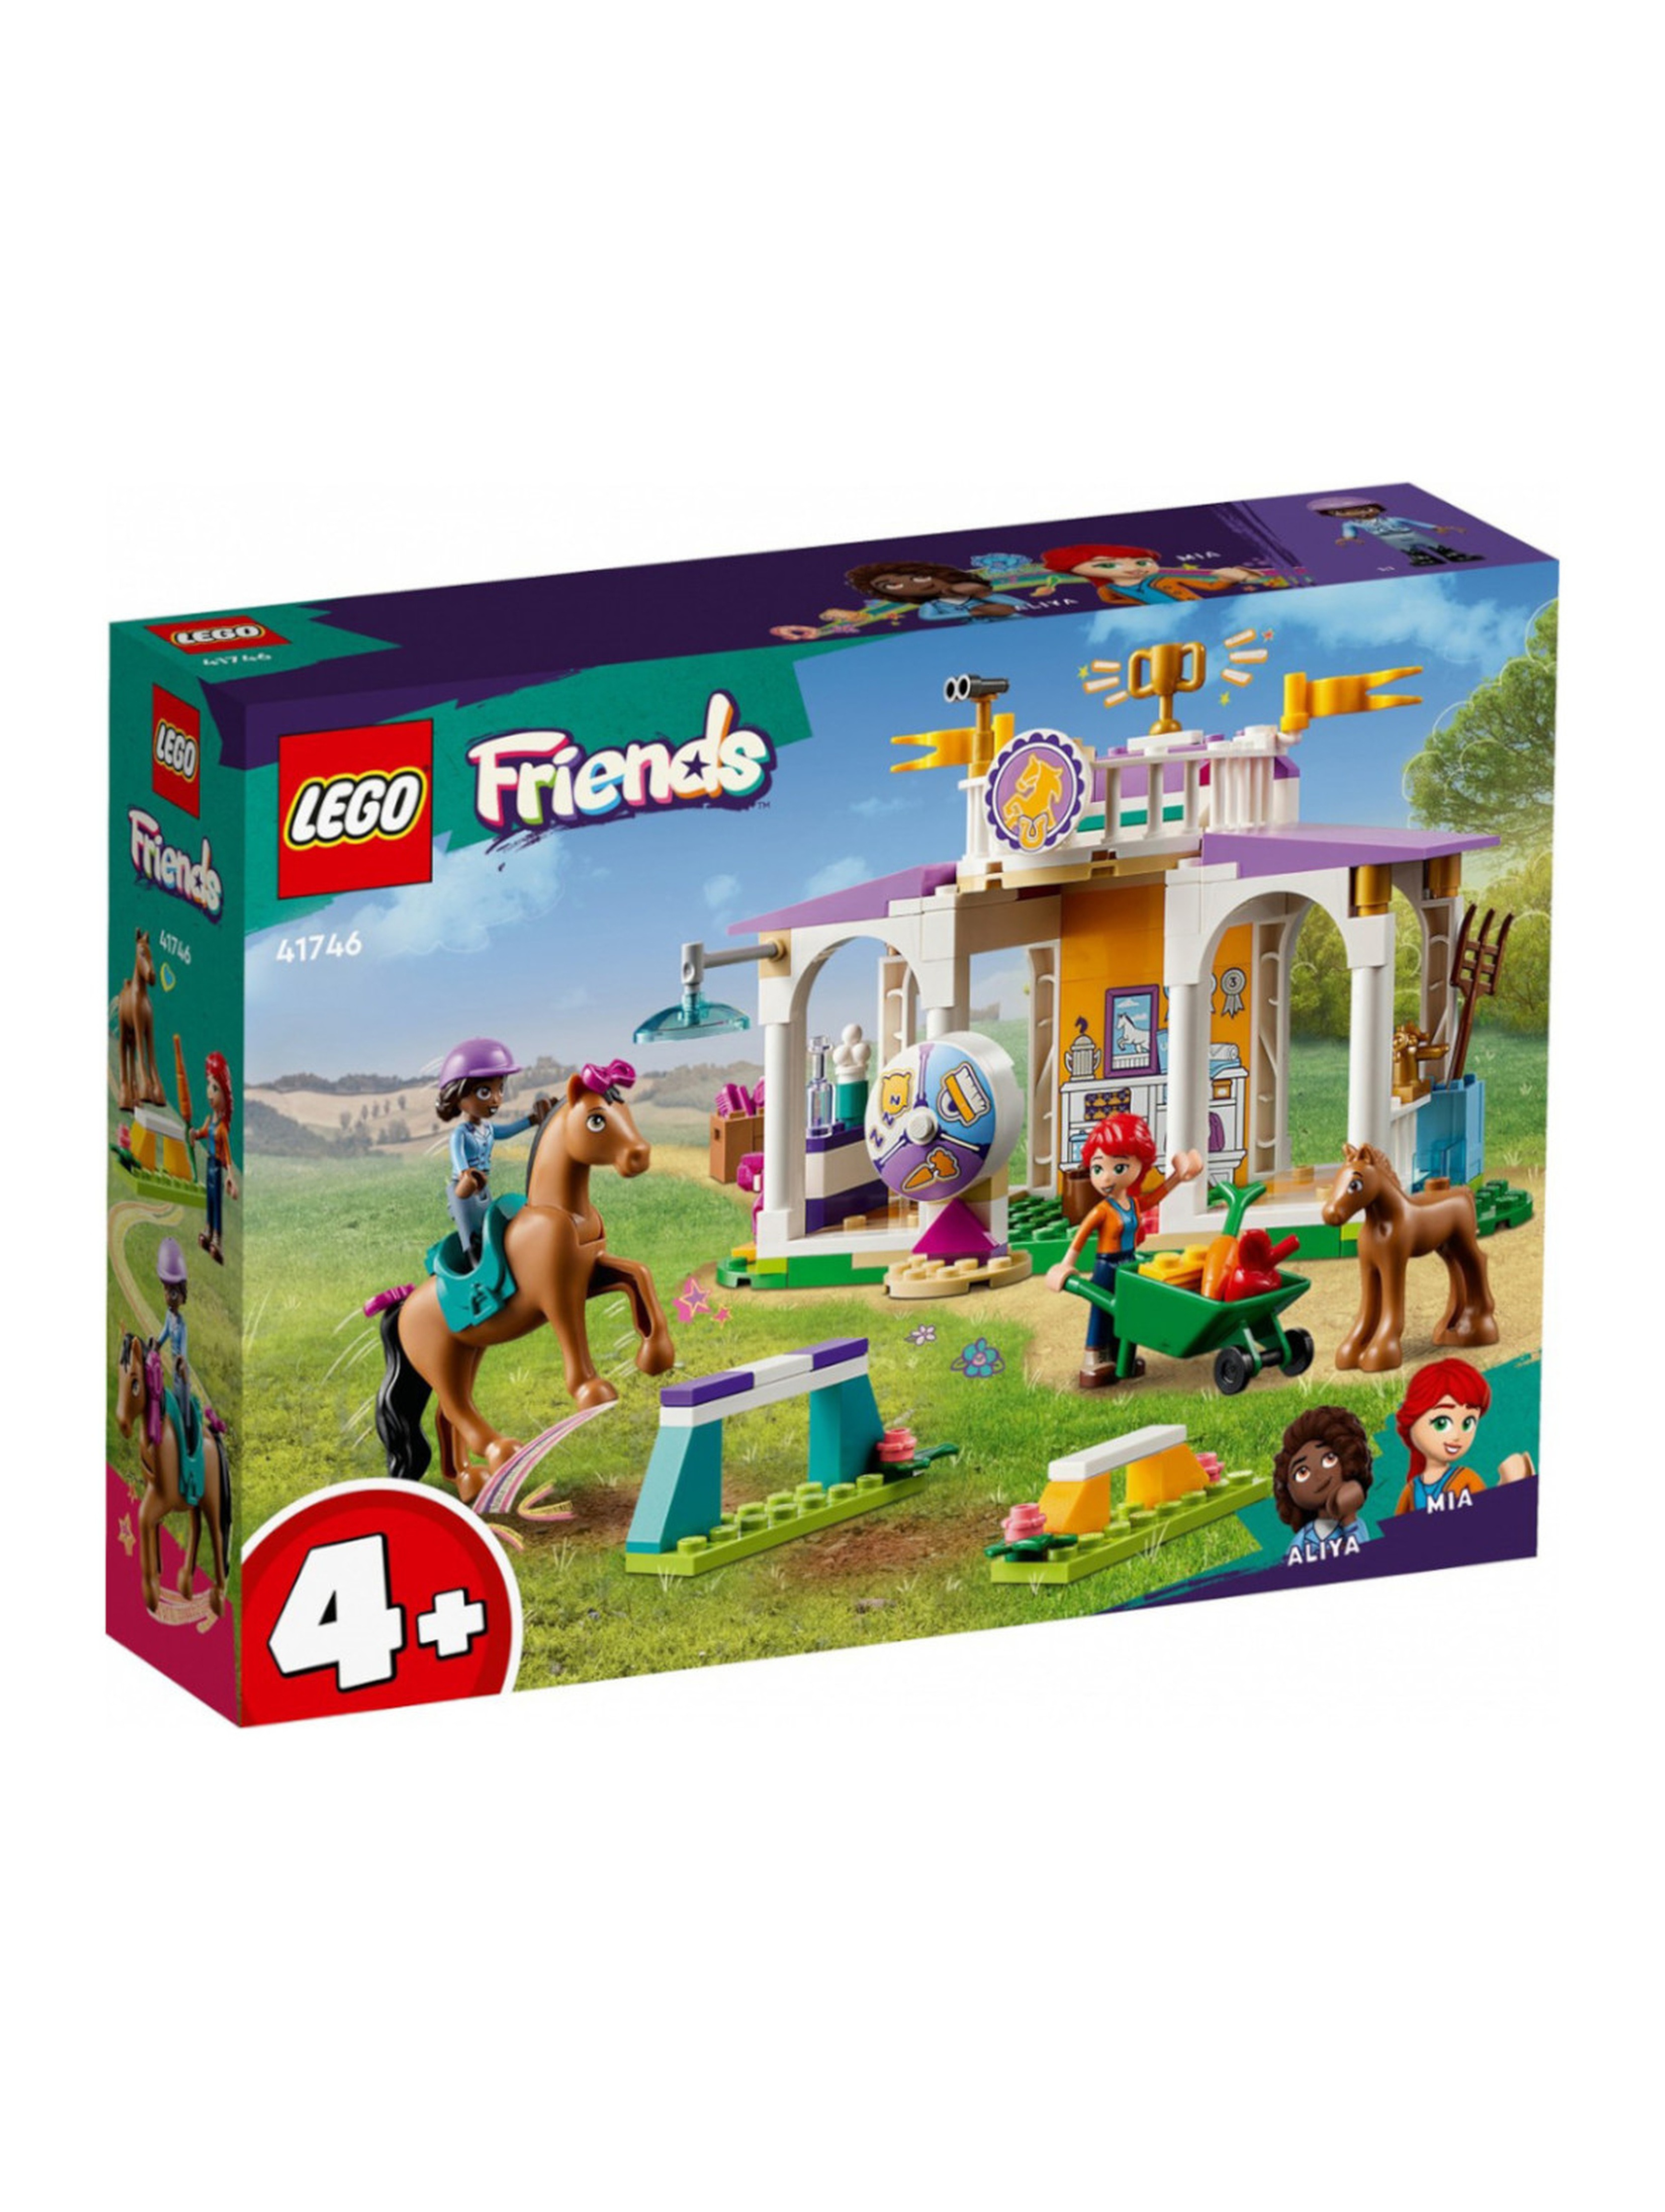 Klocki LEGO Friends 41746 Szkolenie koni - 134 elementy, wiek 4 +